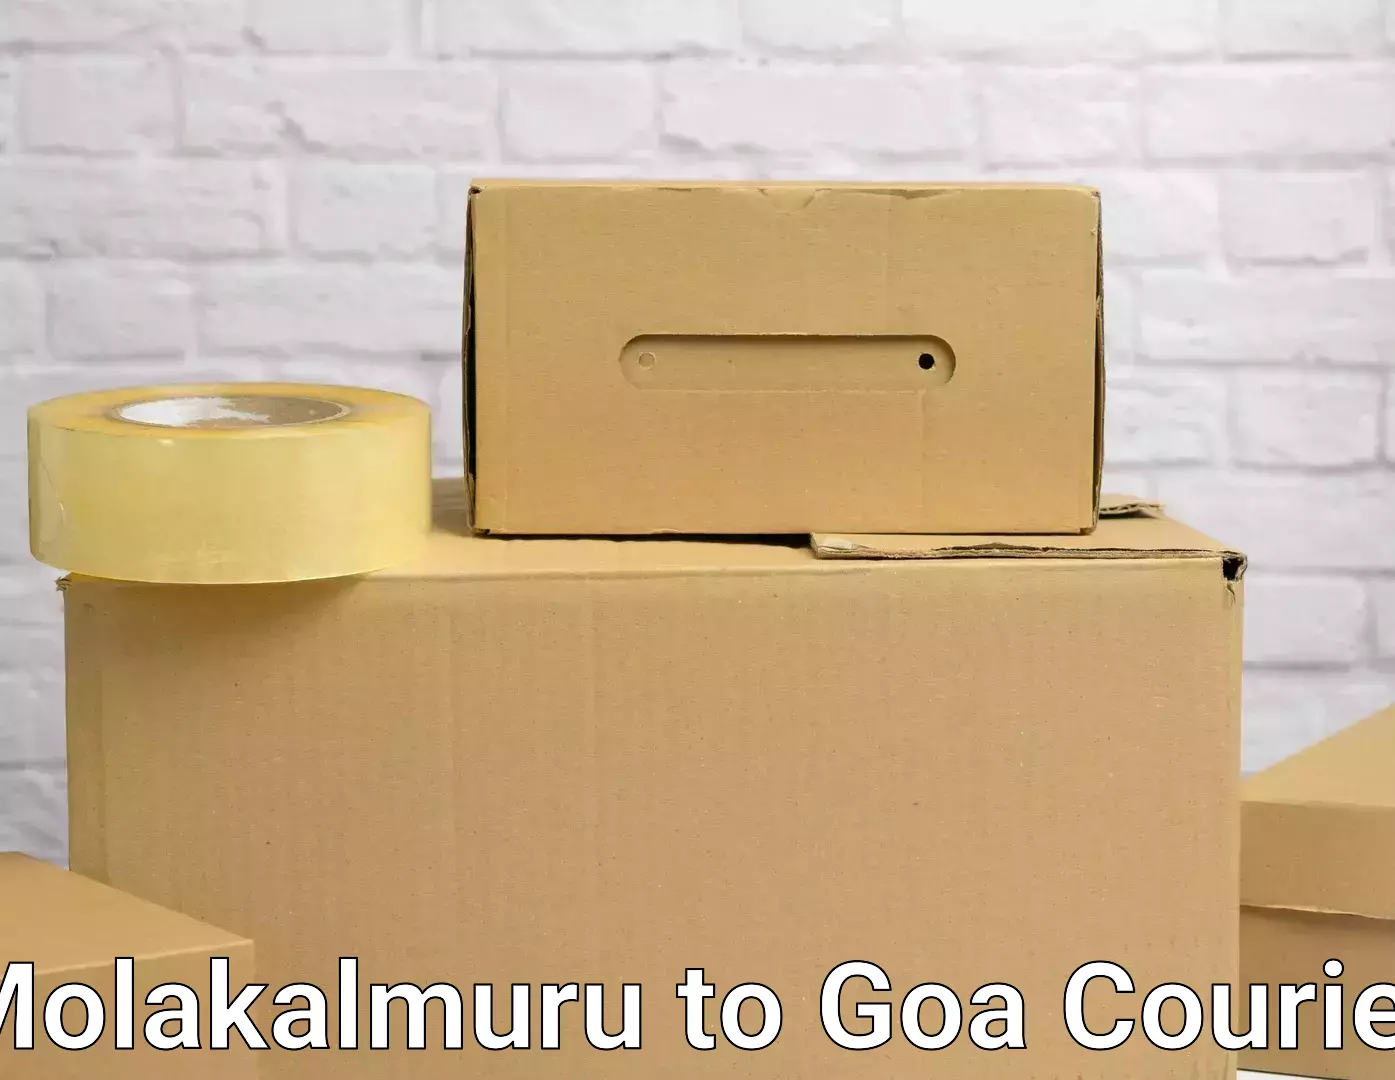 Professional movers and packers Molakalmuru to NIT Goa